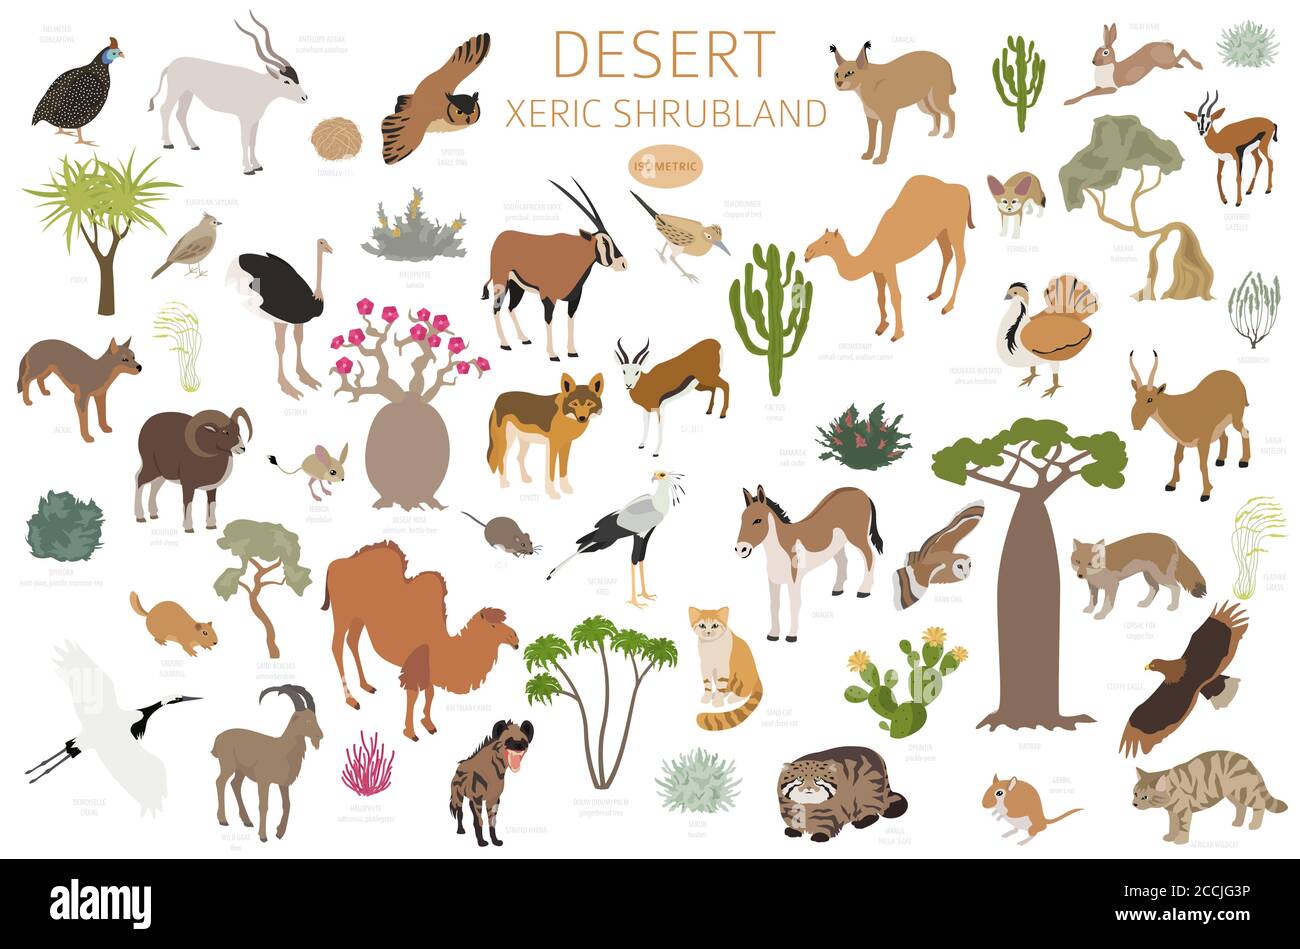 Bioma del deserto, bioma xerico del shrubland, infografica della regione naturale. Mappa mondiale dell'ecosistema terrestre. Animali, uccelli e vegetazioni Set isometrico. Illustrazione Vettoriale